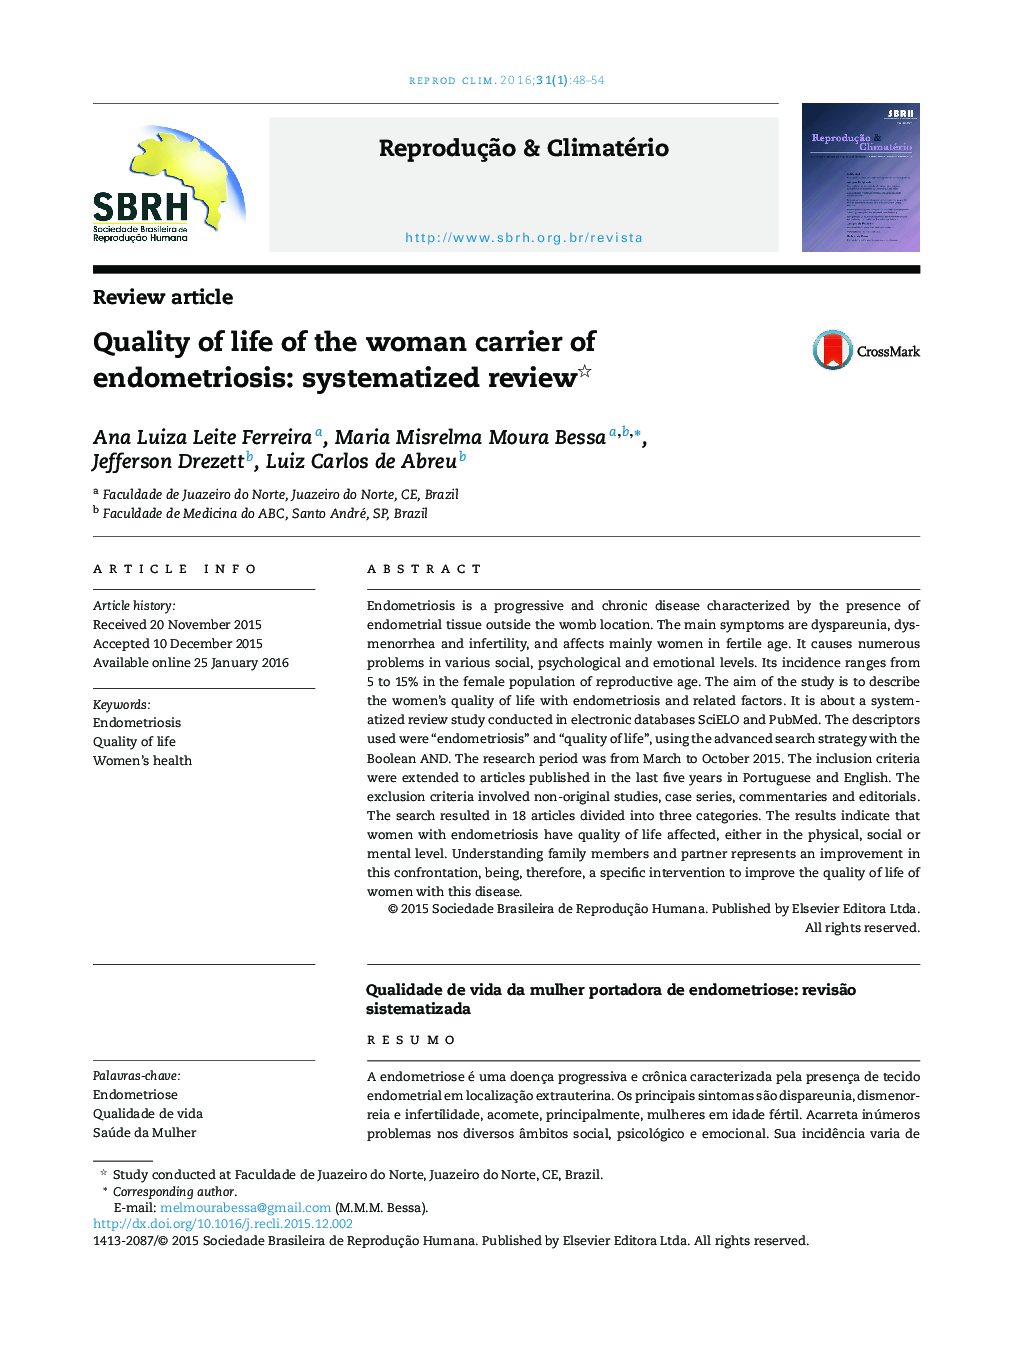 کیفیت زندگی حامل زن اندومتریوز: نظام بررسی